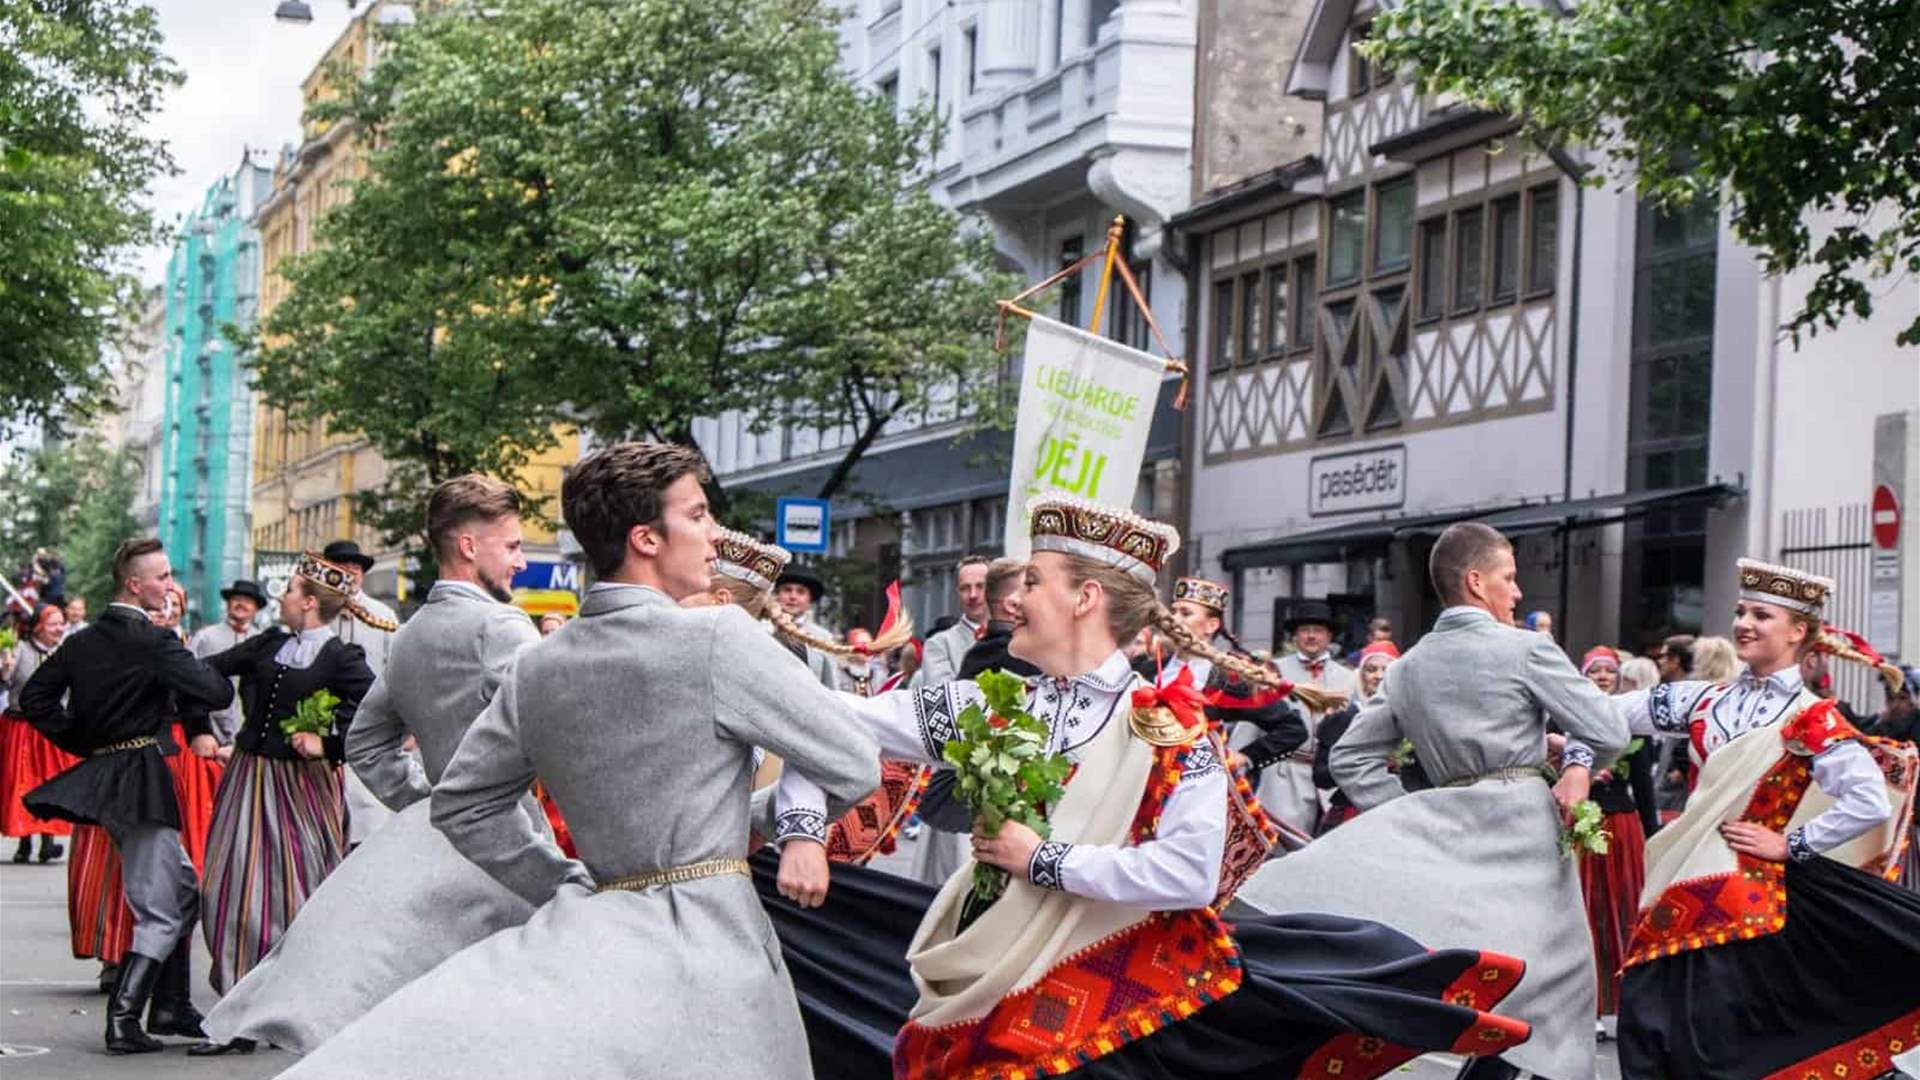 في مهرجان يرمز إلى هويتهم الوطنية... عشرات الآلاف من اللاتفيين يحتفلون بتقاليد غنائية فولكلورية